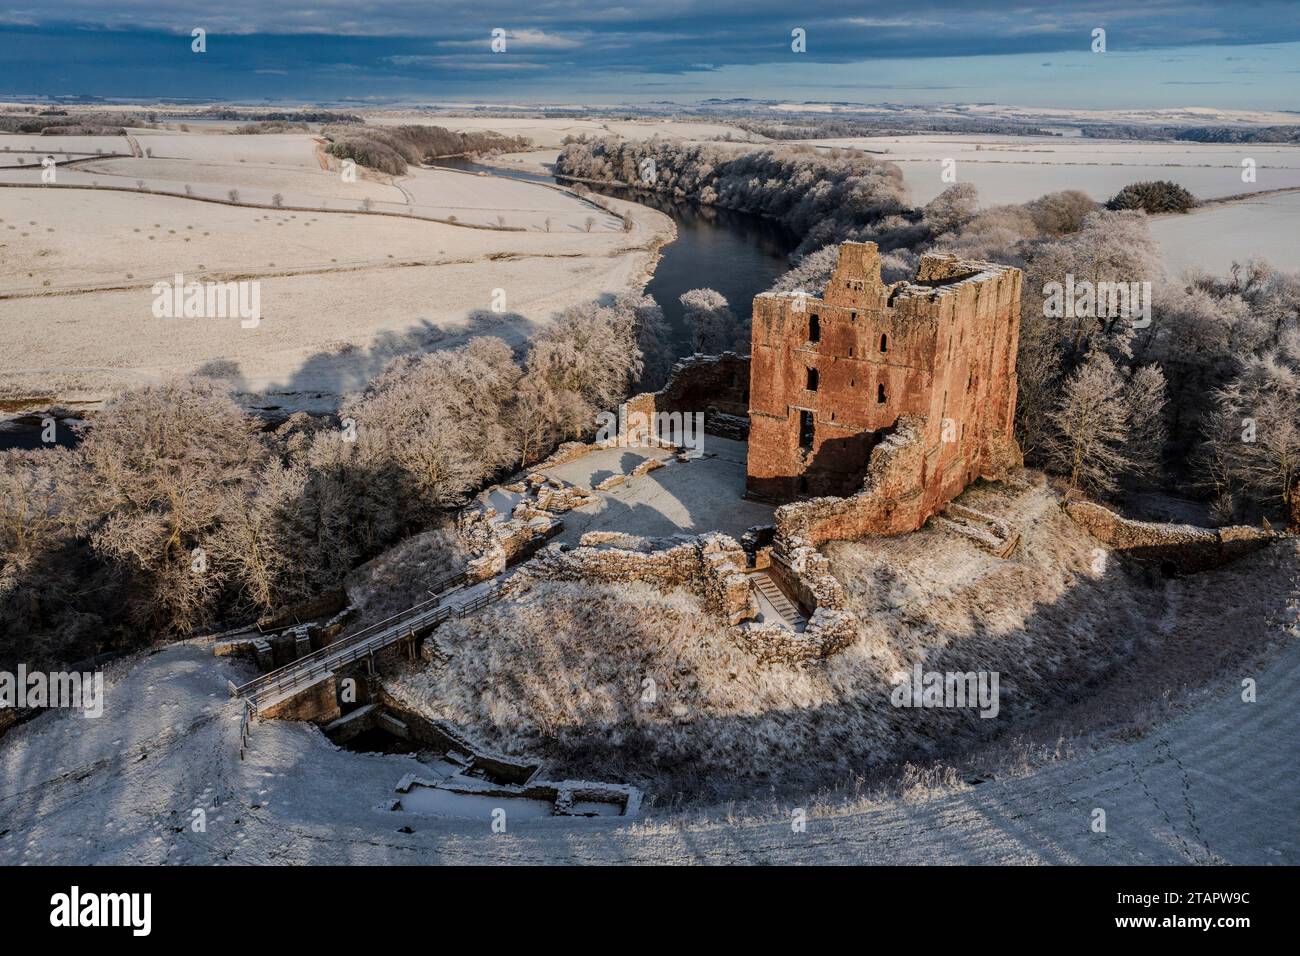 Un paysage enneigé avec le château de Norham sous le soleil d'hiver, se trouve au-dessus de la rivière Tweed gardant la frontière. Norham, Northumberland, Angleterre Banque D'Images